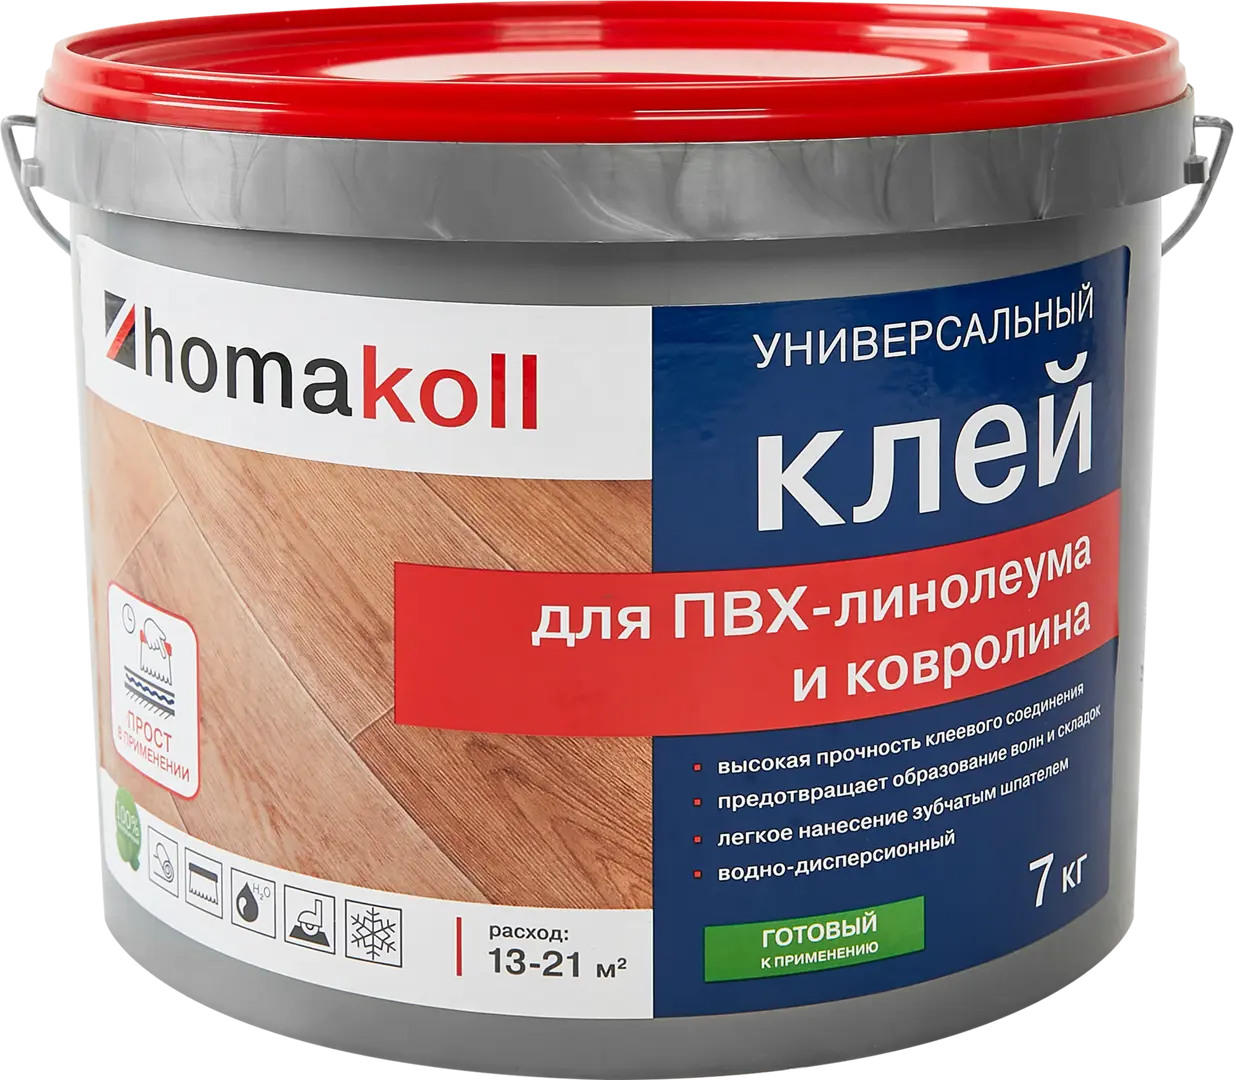 Клей универсальный для линолеума и ковролина Хомакол (Homakoll) 7 кг клей универсальный для линолеума и ковролина tytan 14 кг